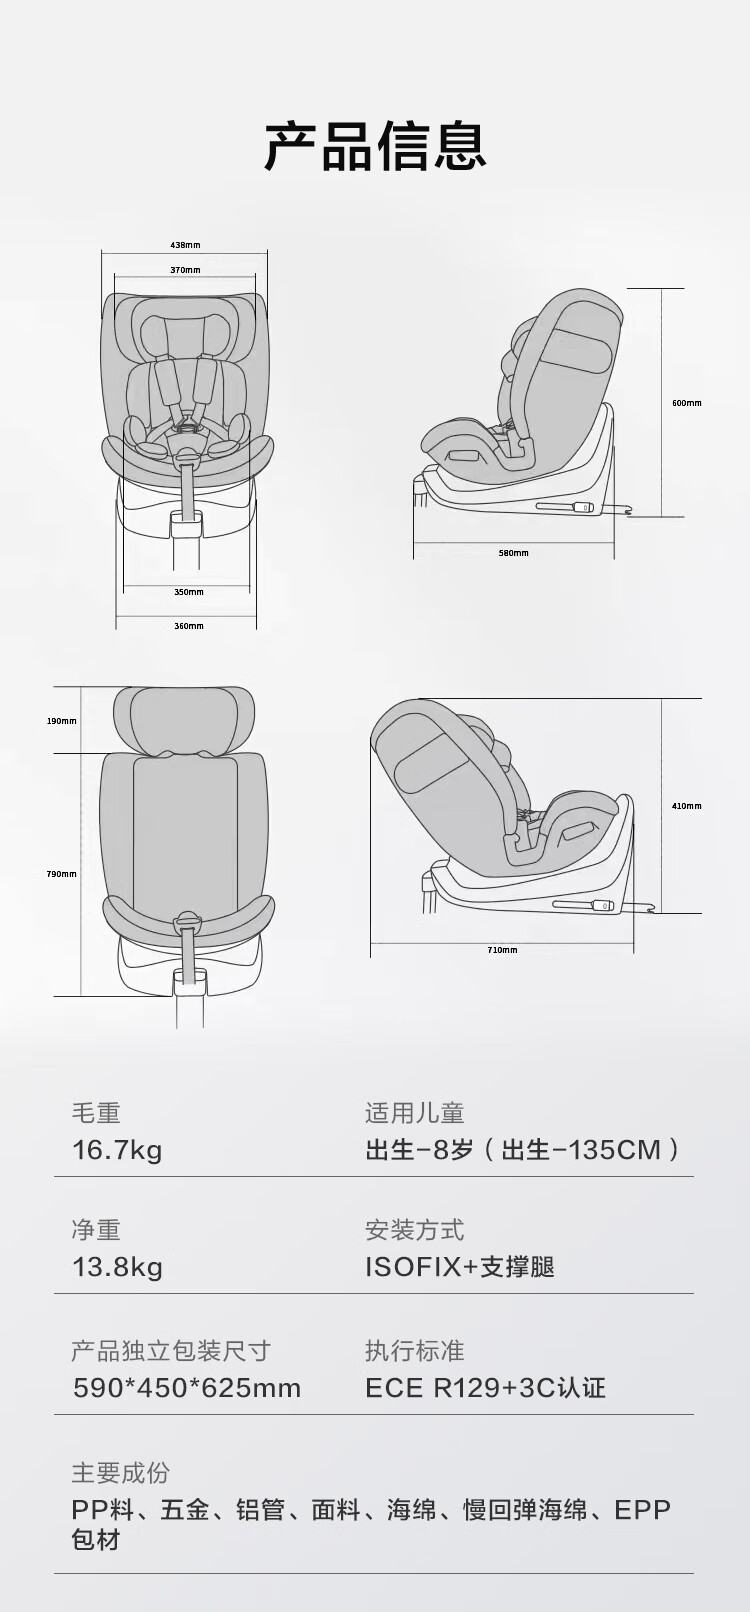 京东京造推出超级新品儿童安全座椅，i-size认证、通风加热装置、可折叠支撑腿